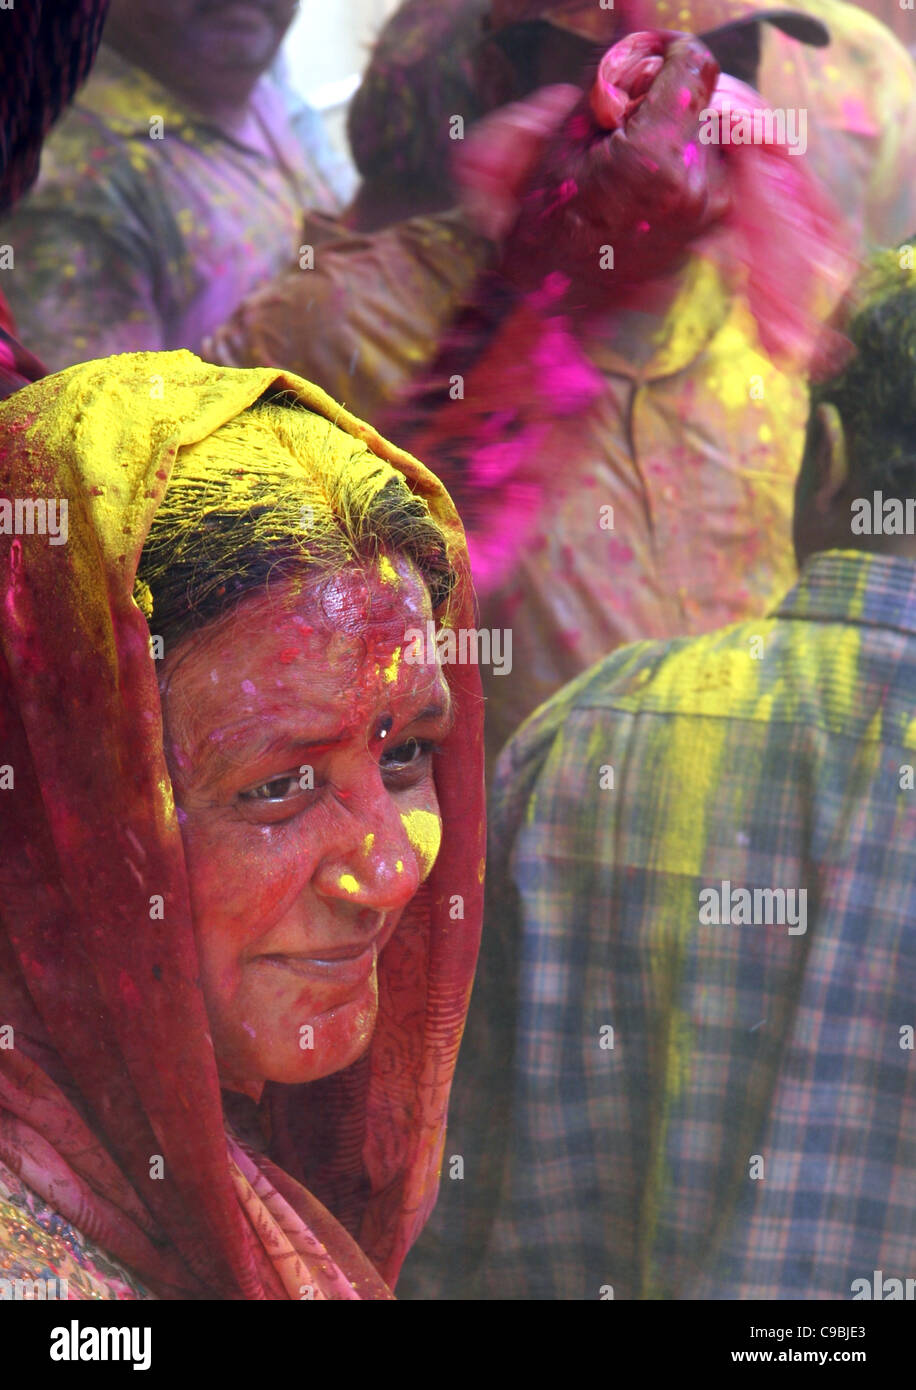 Holi celebrations at Mathura Stock Photo